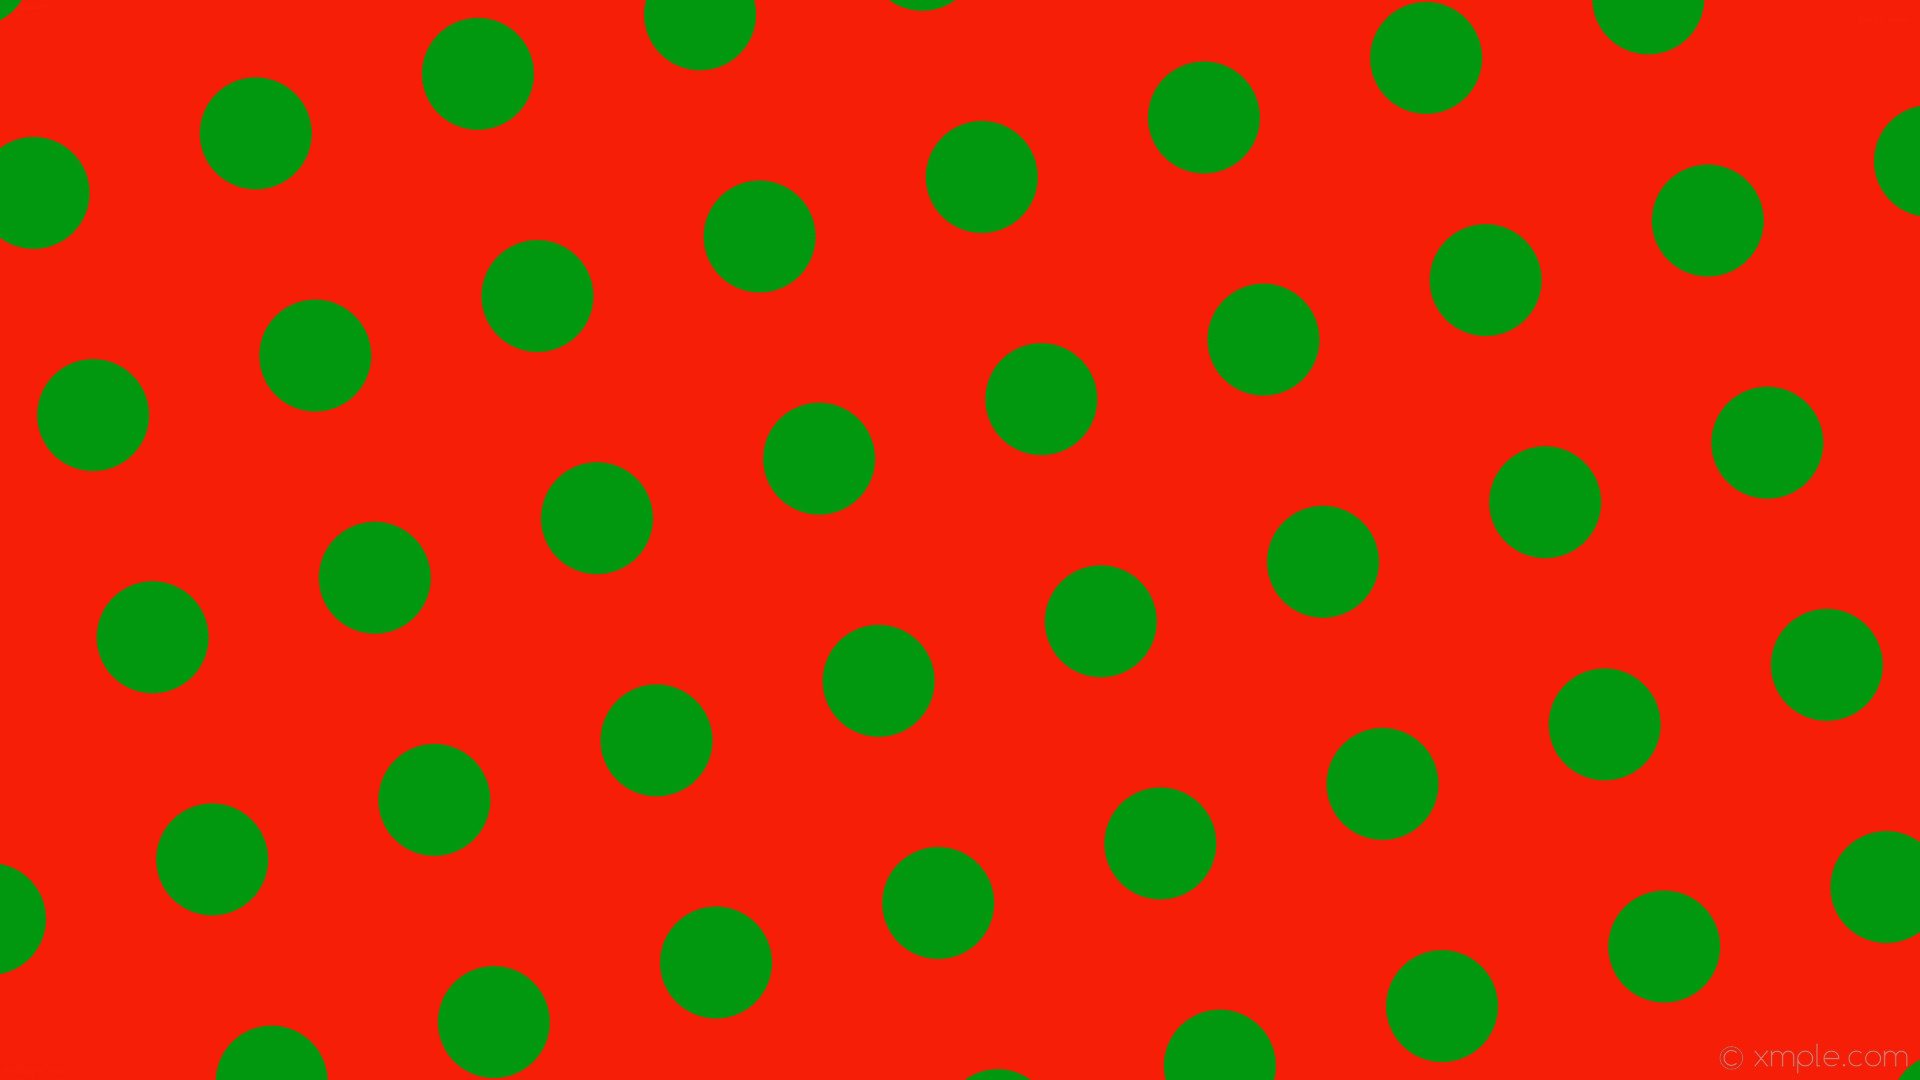 wallpaper red polka dots green spots #f61e06 #01980f 285Â° 112px 230px